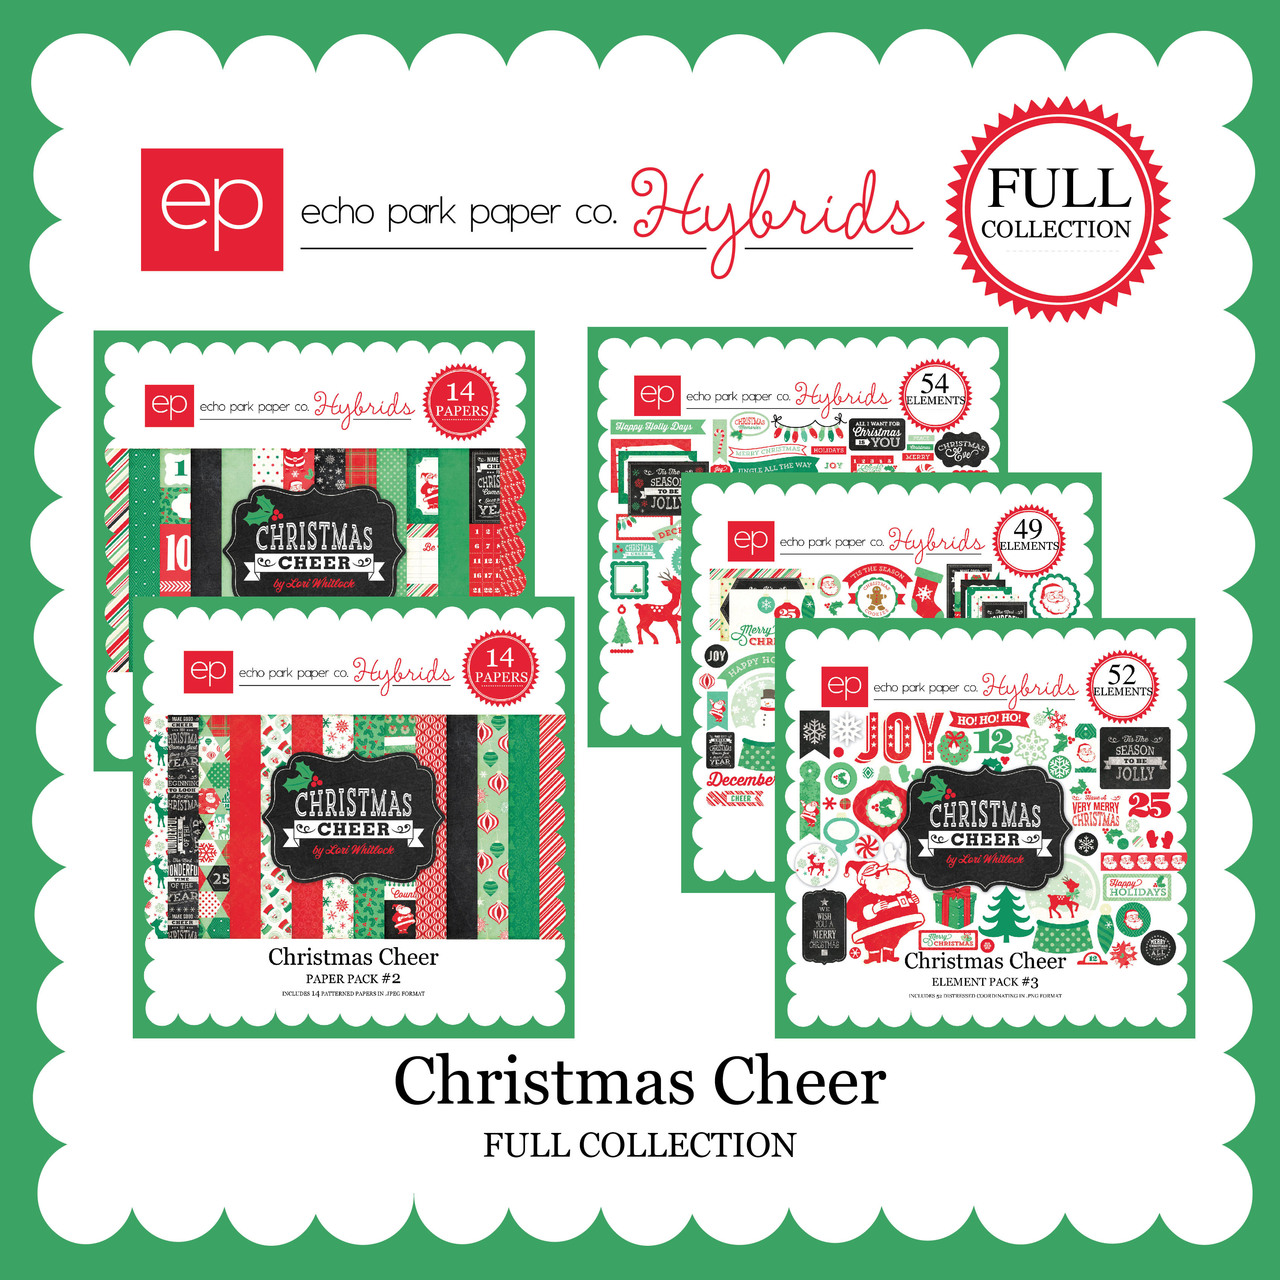 EP Christmas Cheer Mega Collection